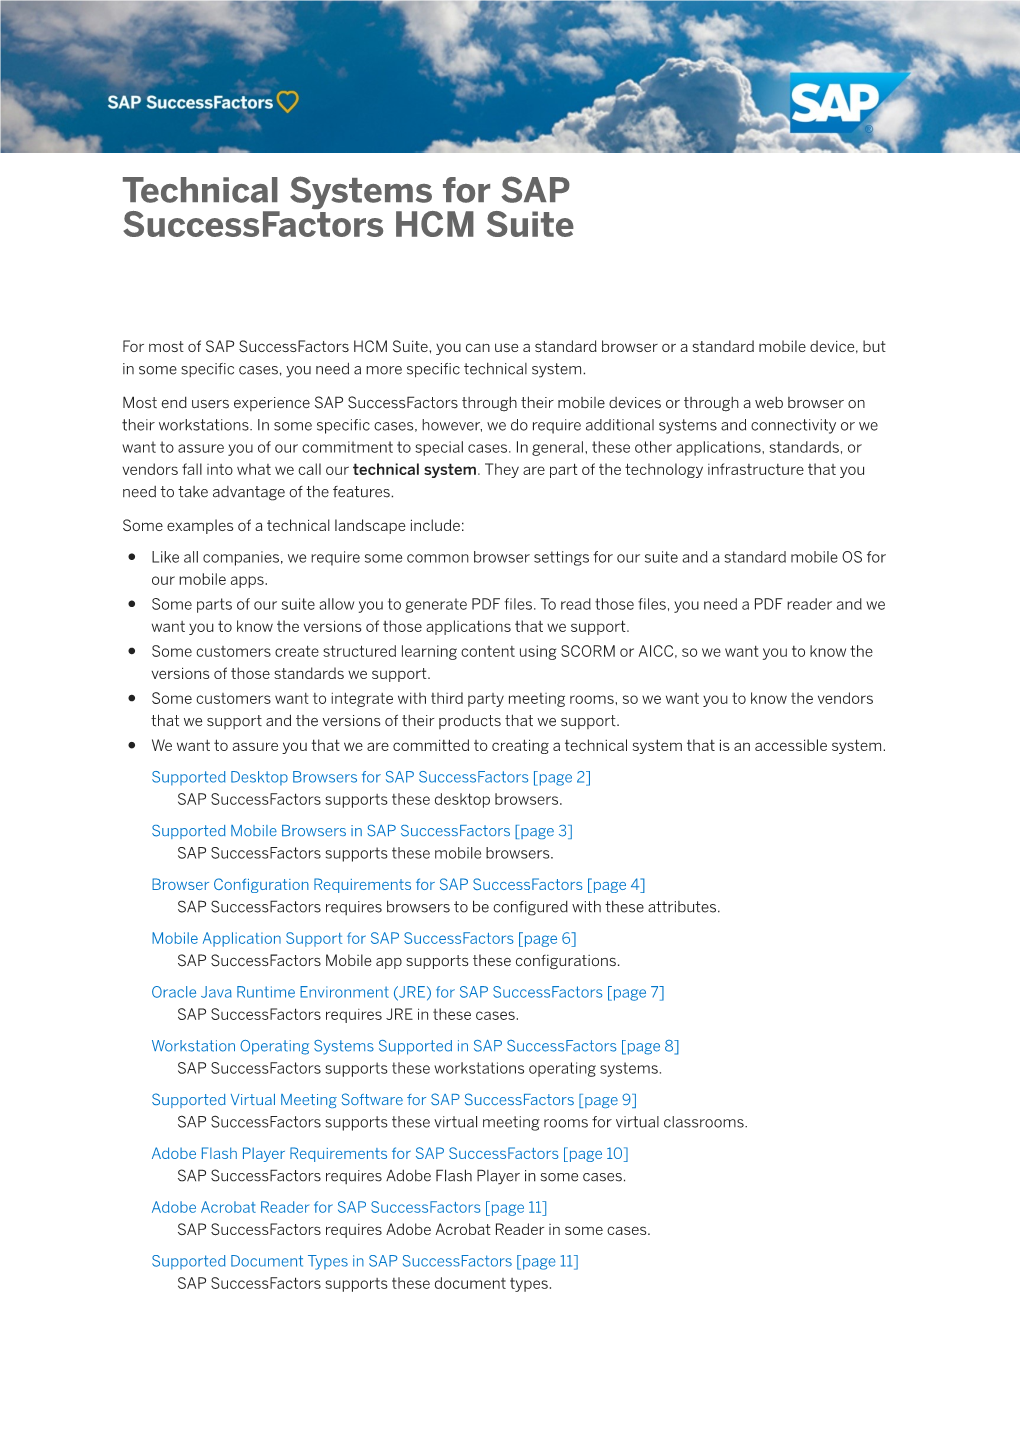 Technical Systems for SAP Successfactors HCM Suite